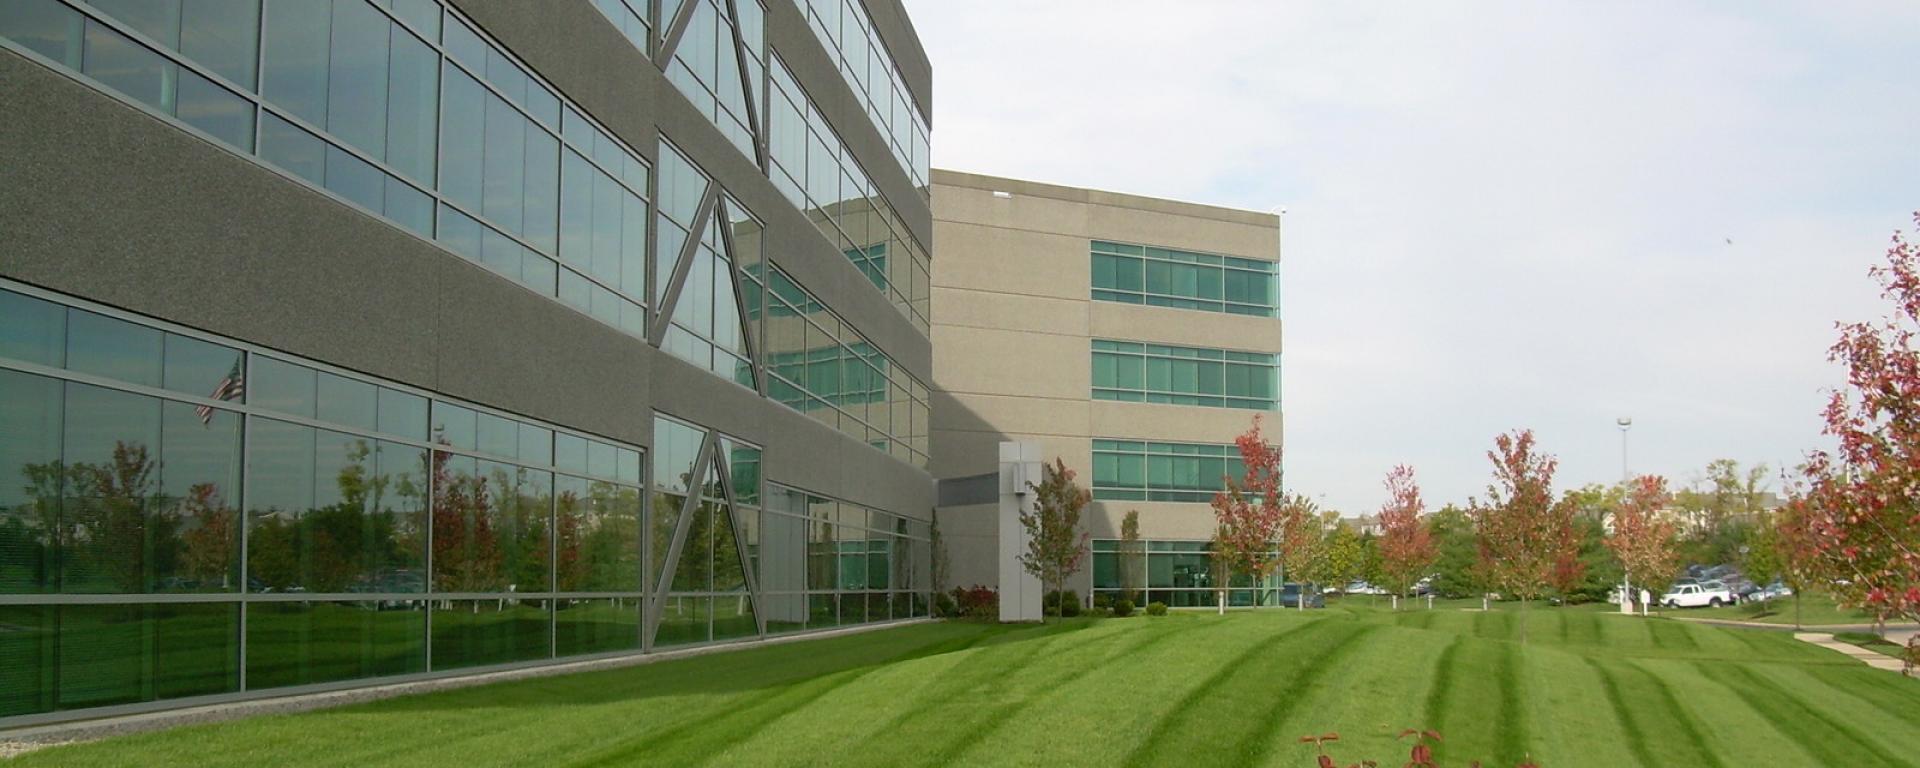 lawn alongside building